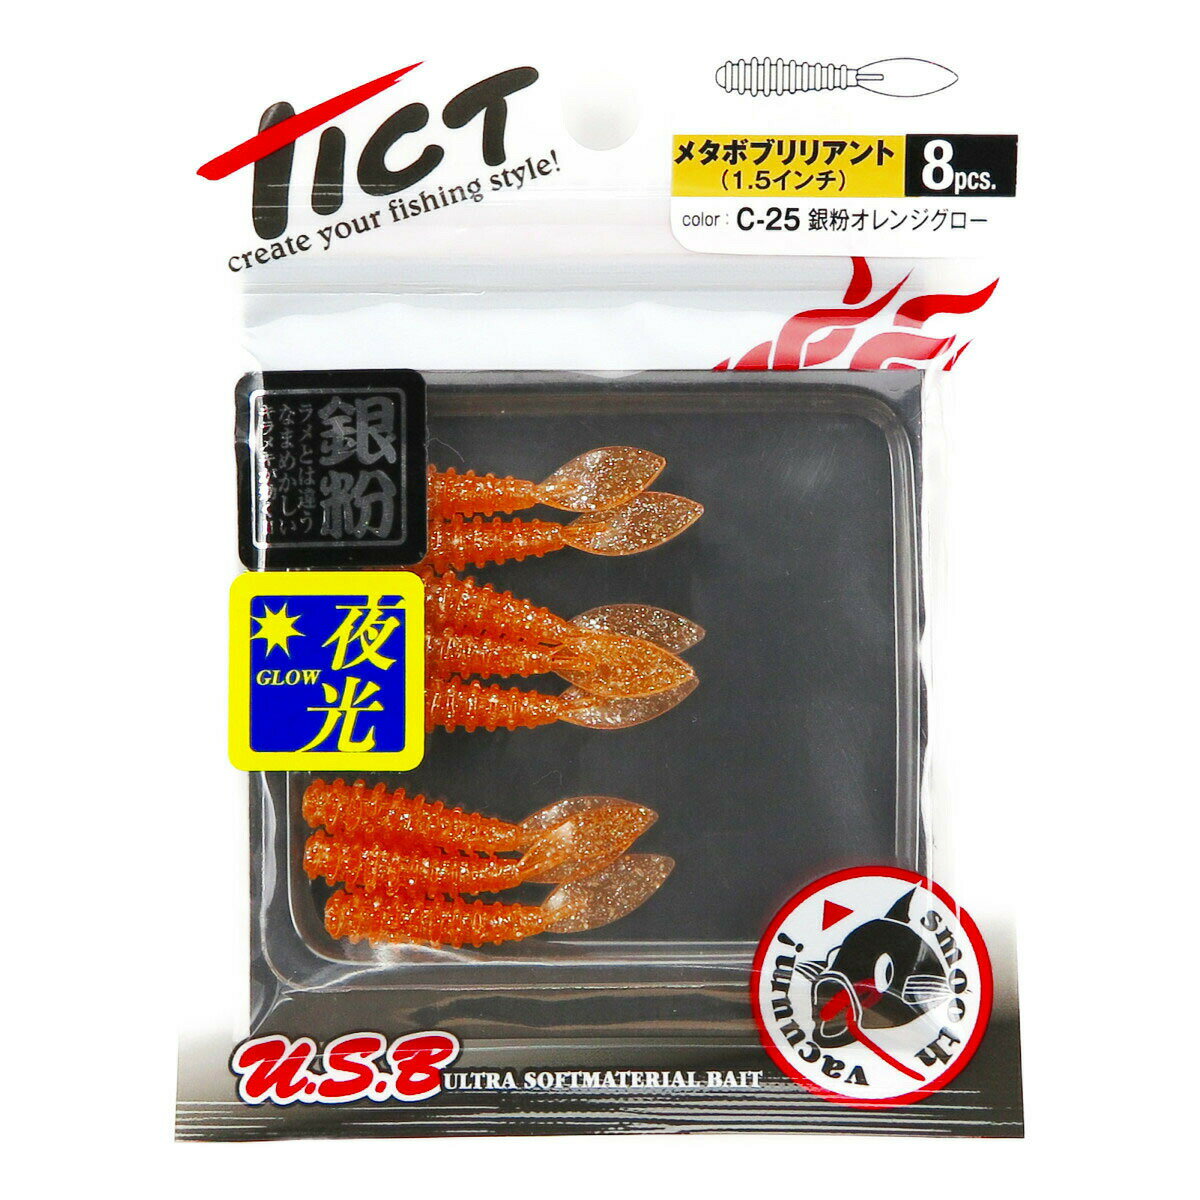 「 ワーム TICT ティクト メタボブリリアント 1.5インチ 銀粉オレンジグロー 」  釣具 釣り具 釣り用品